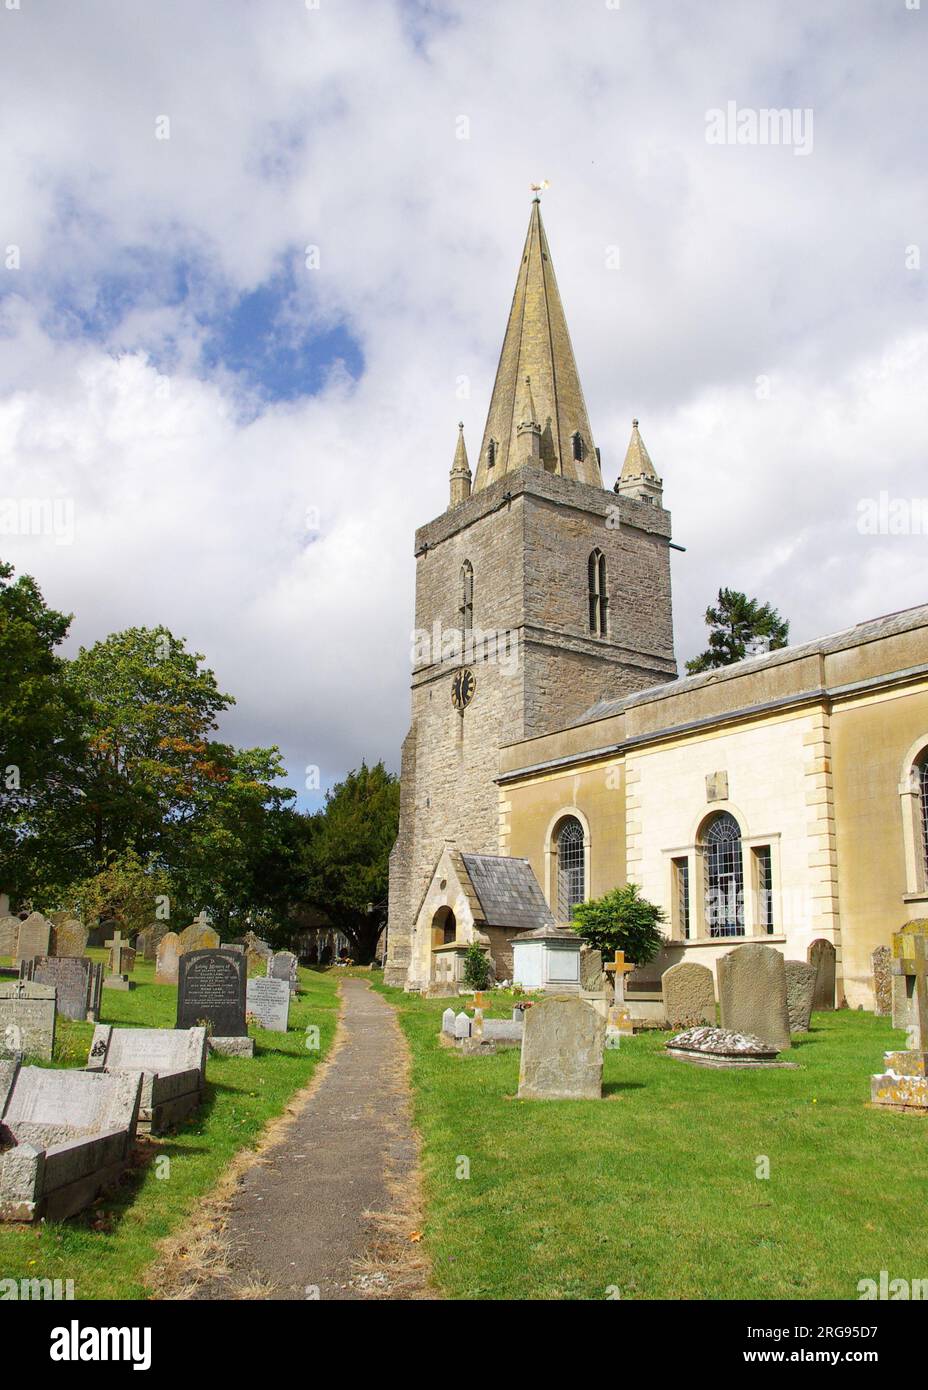 St Mary's Church, Longdon, Worcestershire, un edificio classificato di grado II. La torre occidentale risale al 1300 circa; vi furono varie aggiunte nel XVIII e XIX secolo. Foto Stock